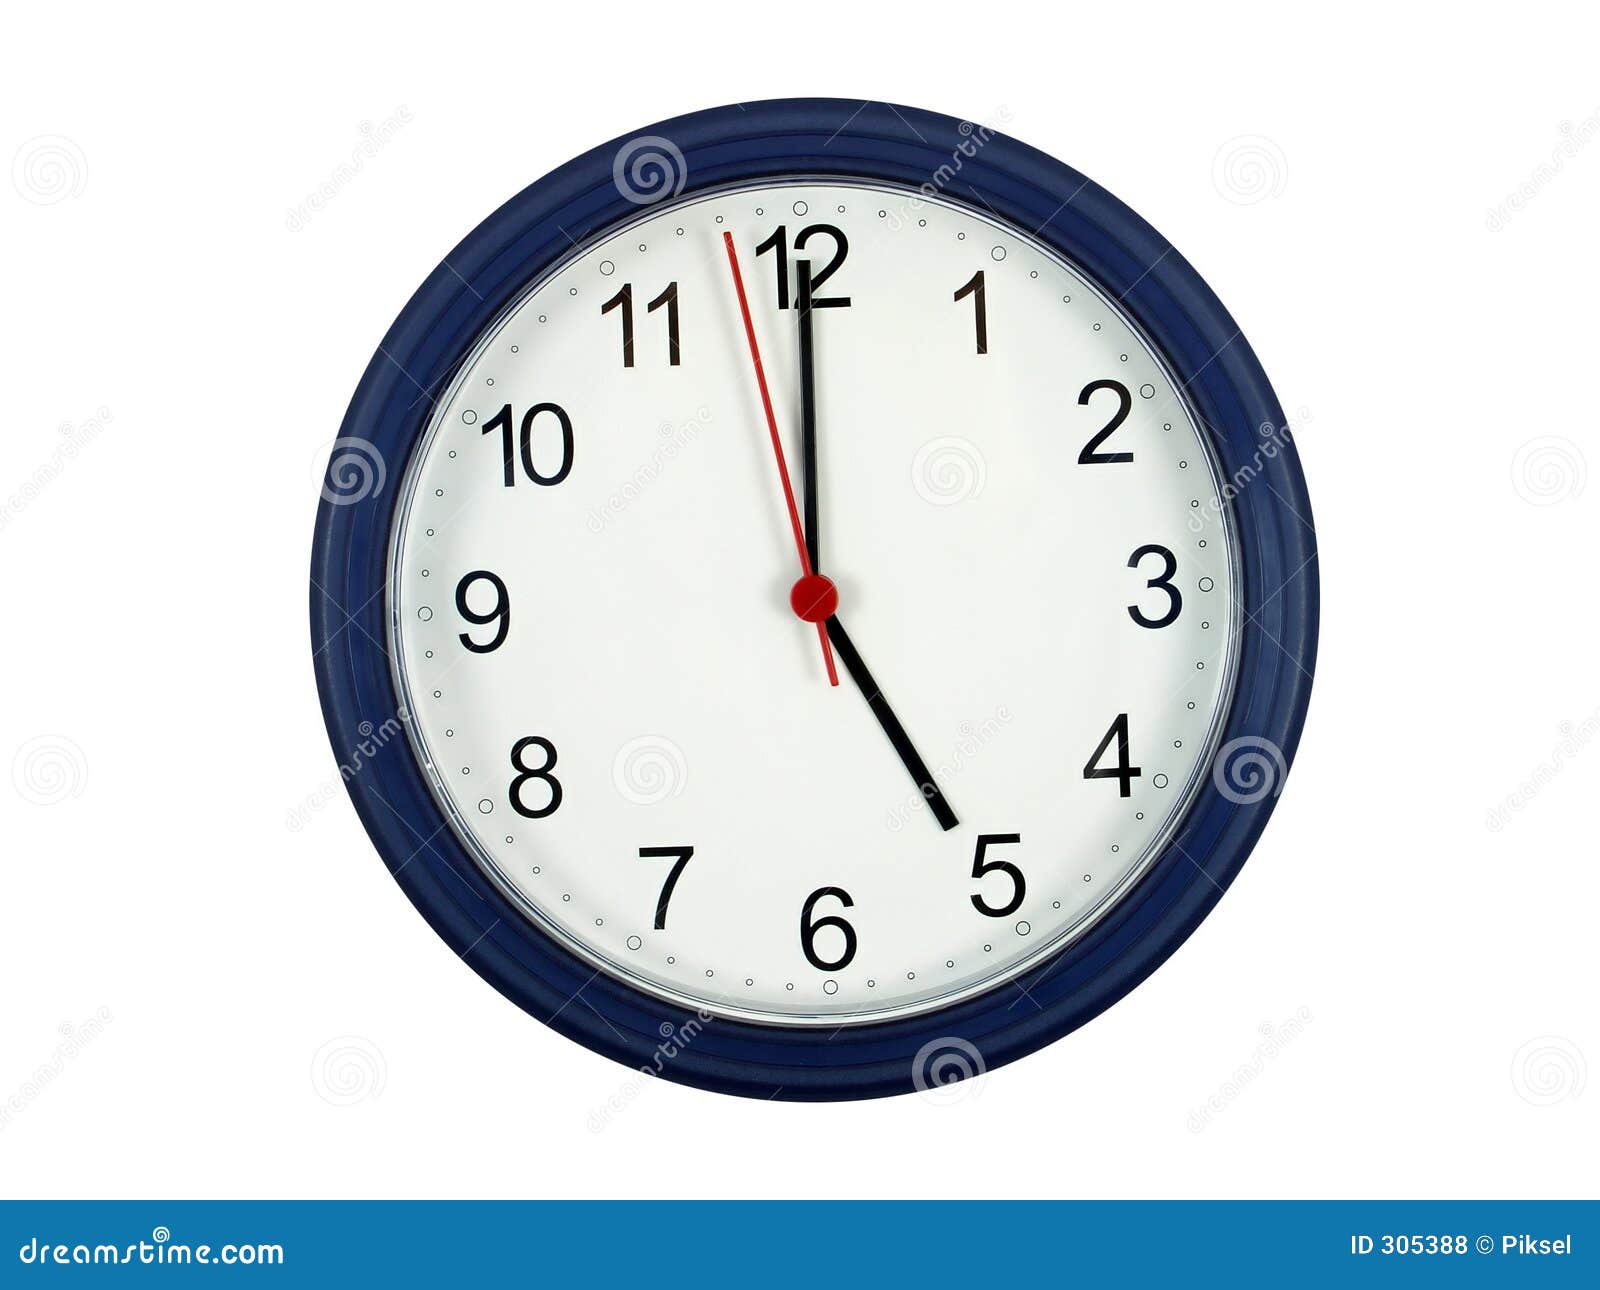 clock showing 5 o'clock